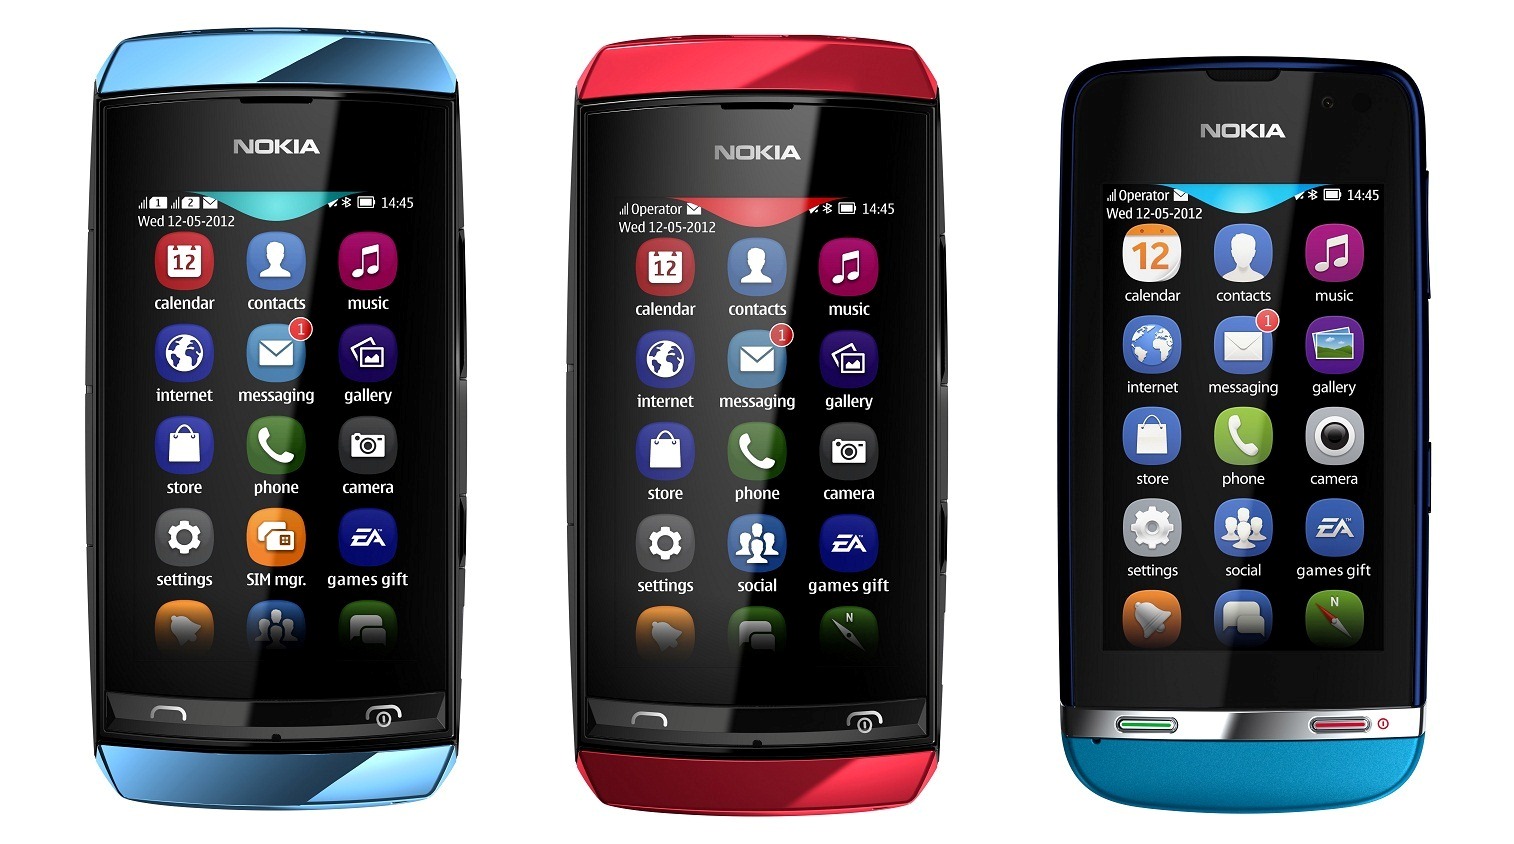 Nokia Asha 402